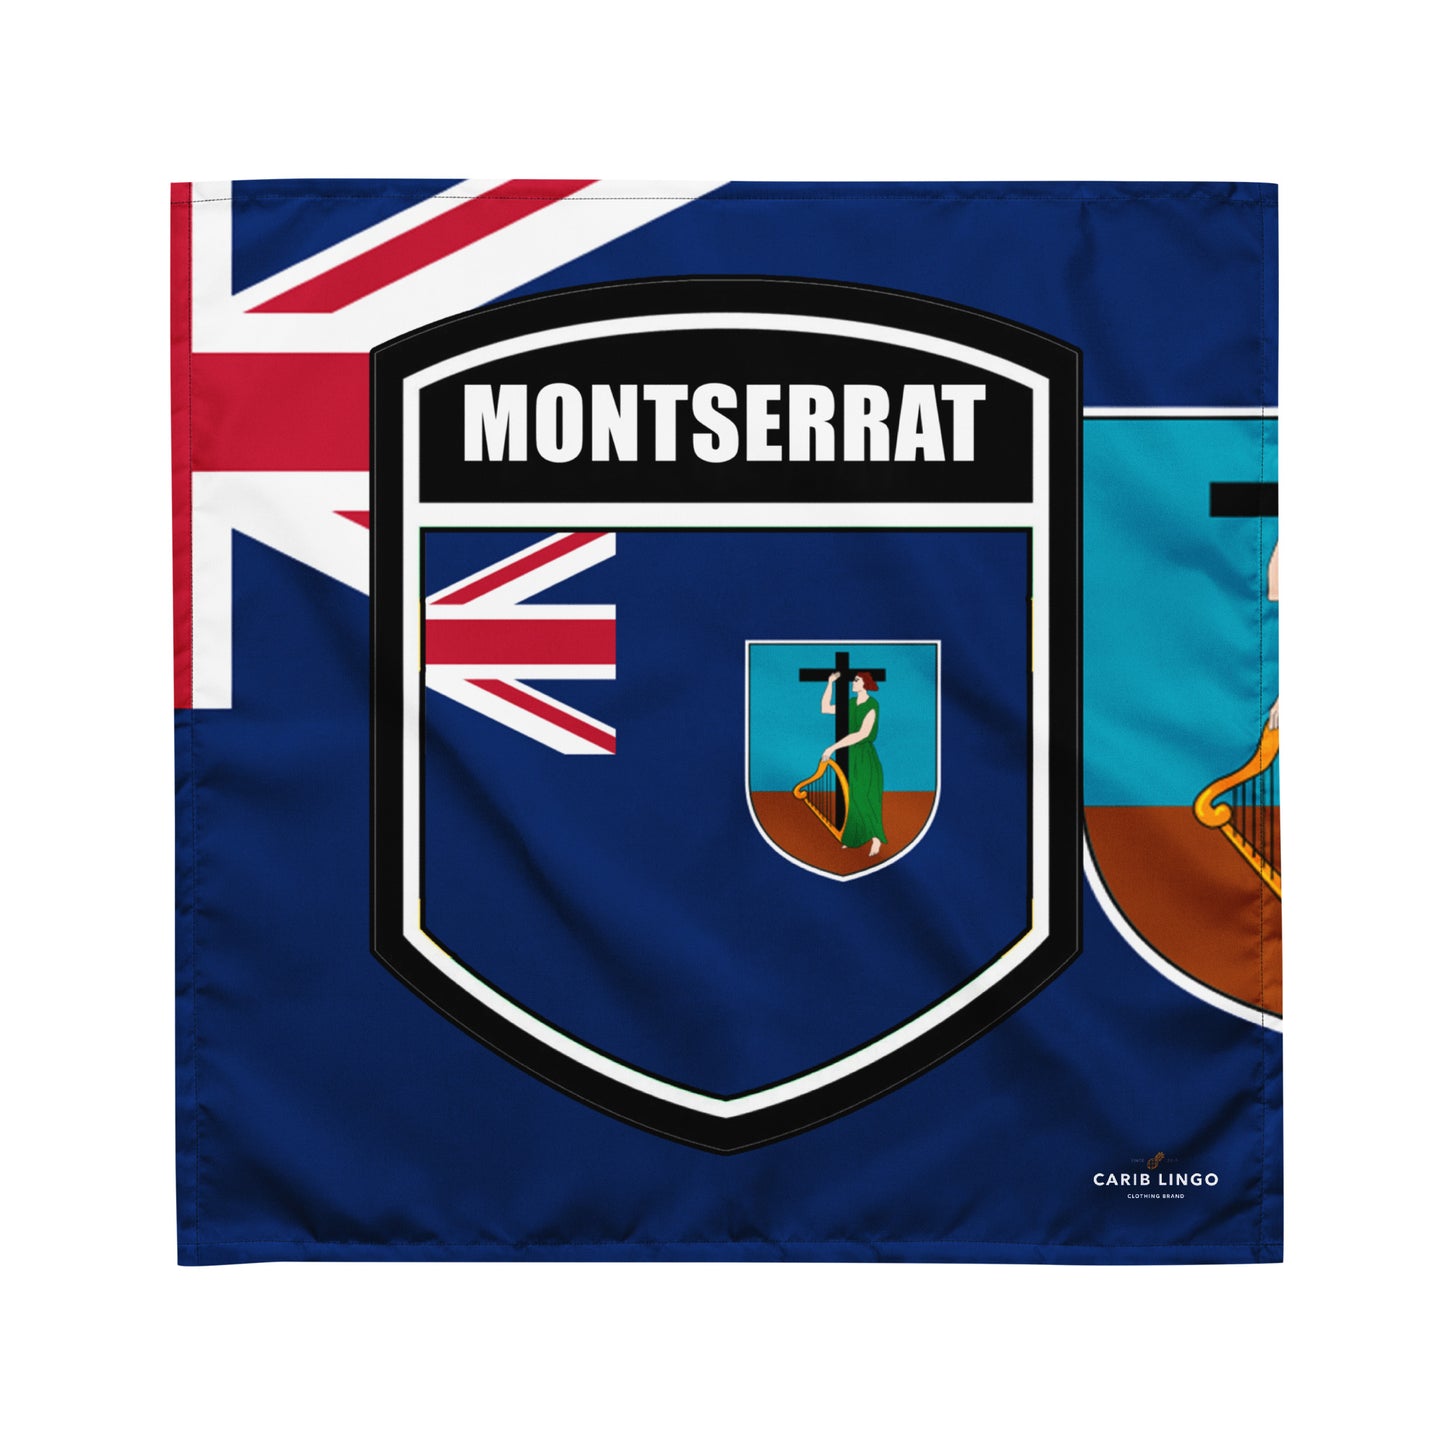 Montserrat bandana